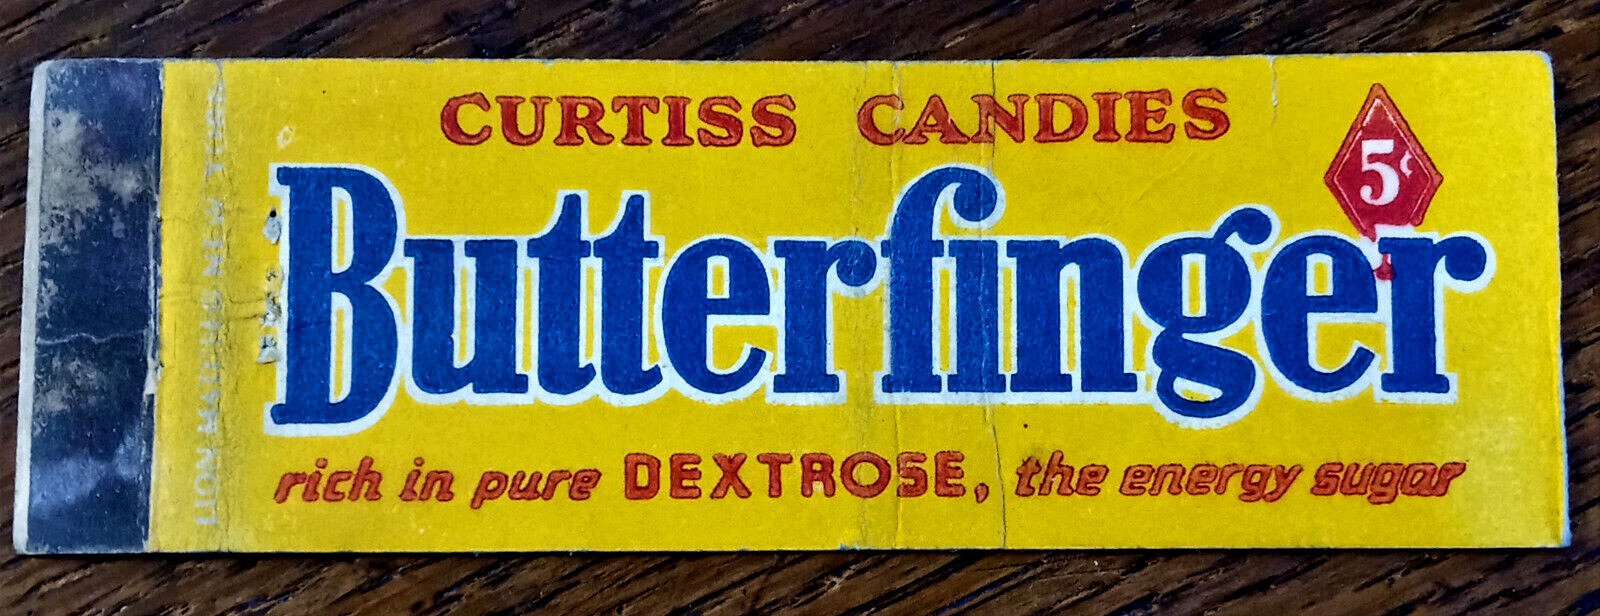 Vintage Matchbook: Curtiss Candies Butterfinger